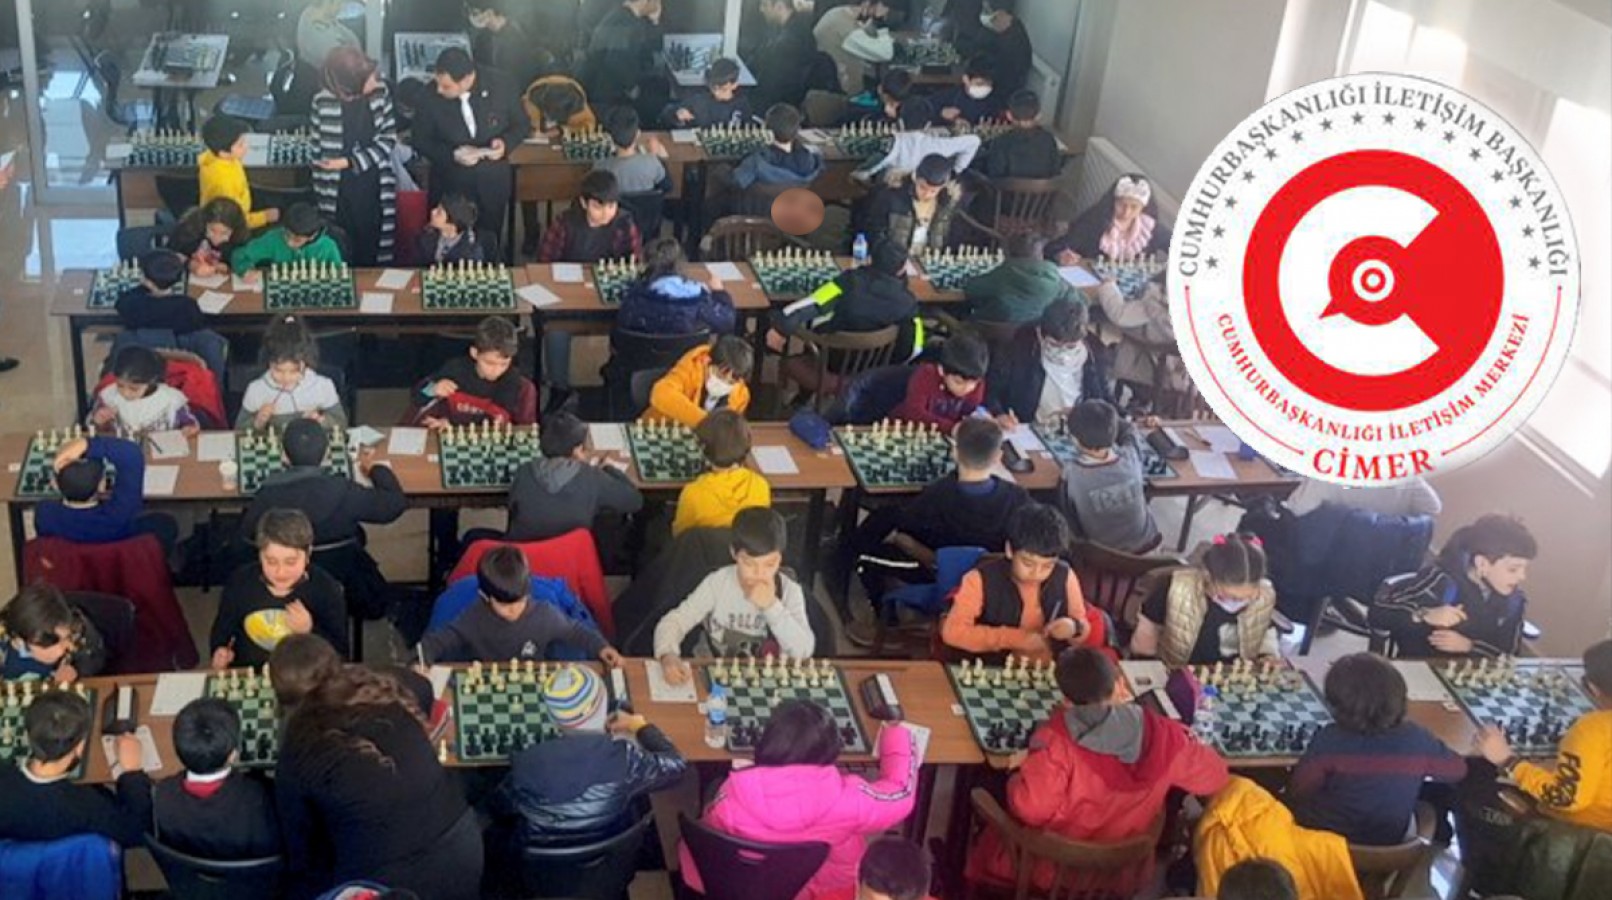 Şanlıurfa'daki satranç turnuvası CİMER'e taşındı!;